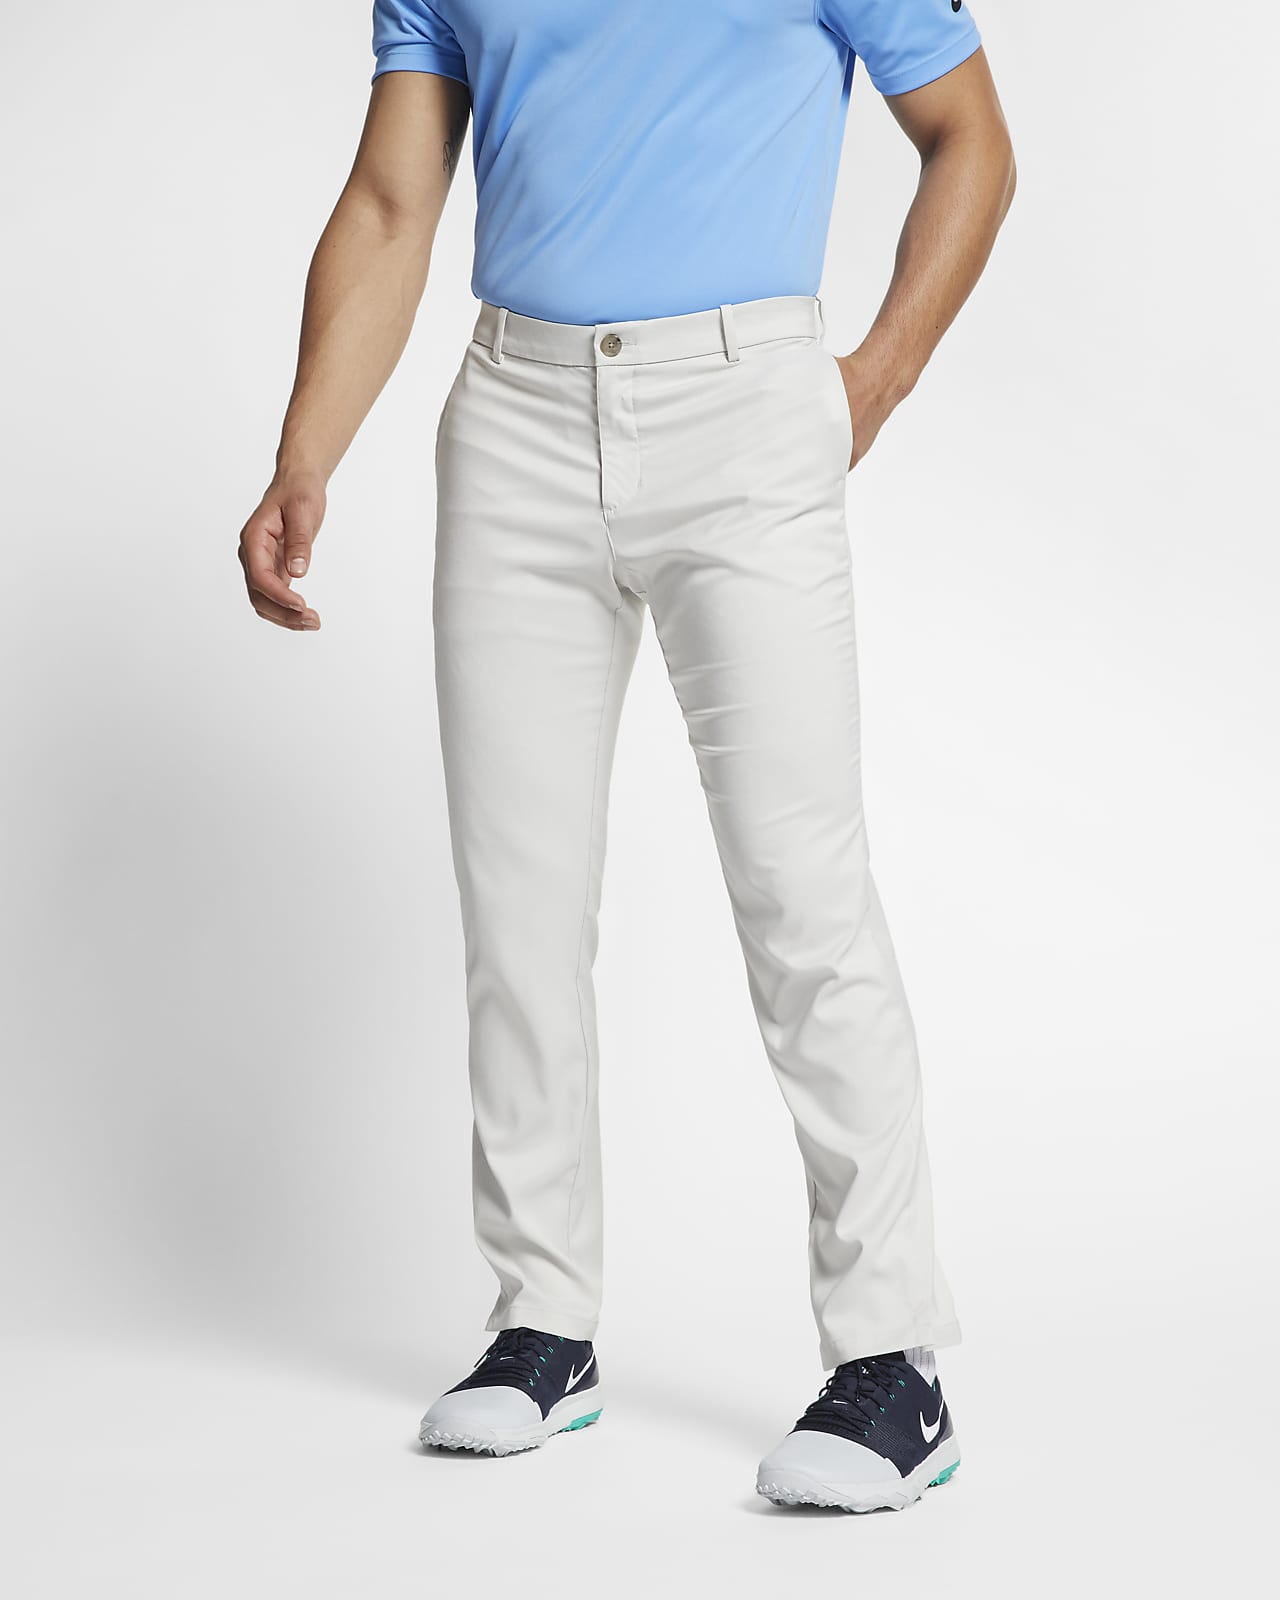 Flex Men's Golf Pants. Nike.com